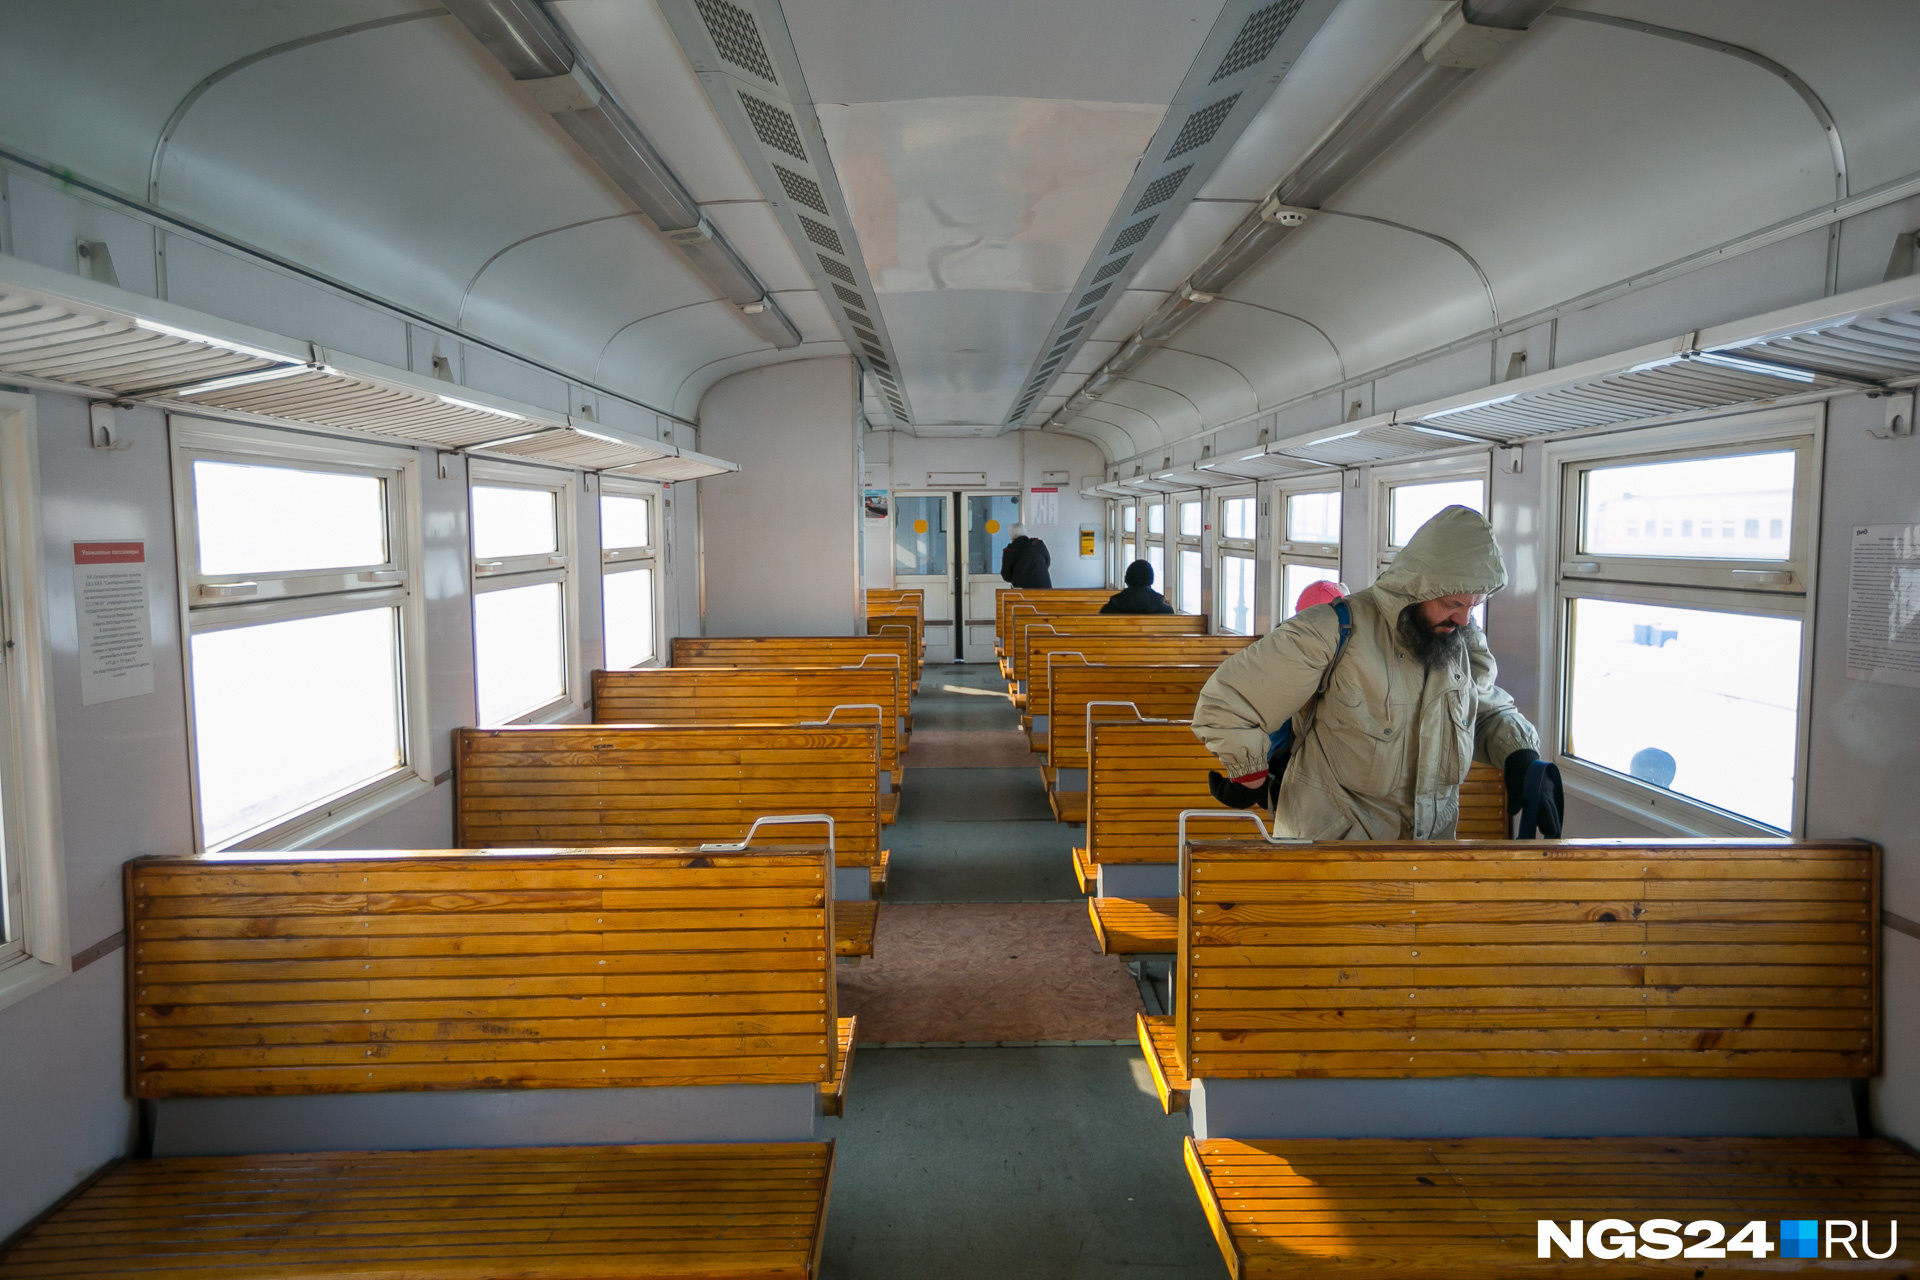 РЖД обсуждает запуск нового прямого поезда между Красноярском и Абаканом